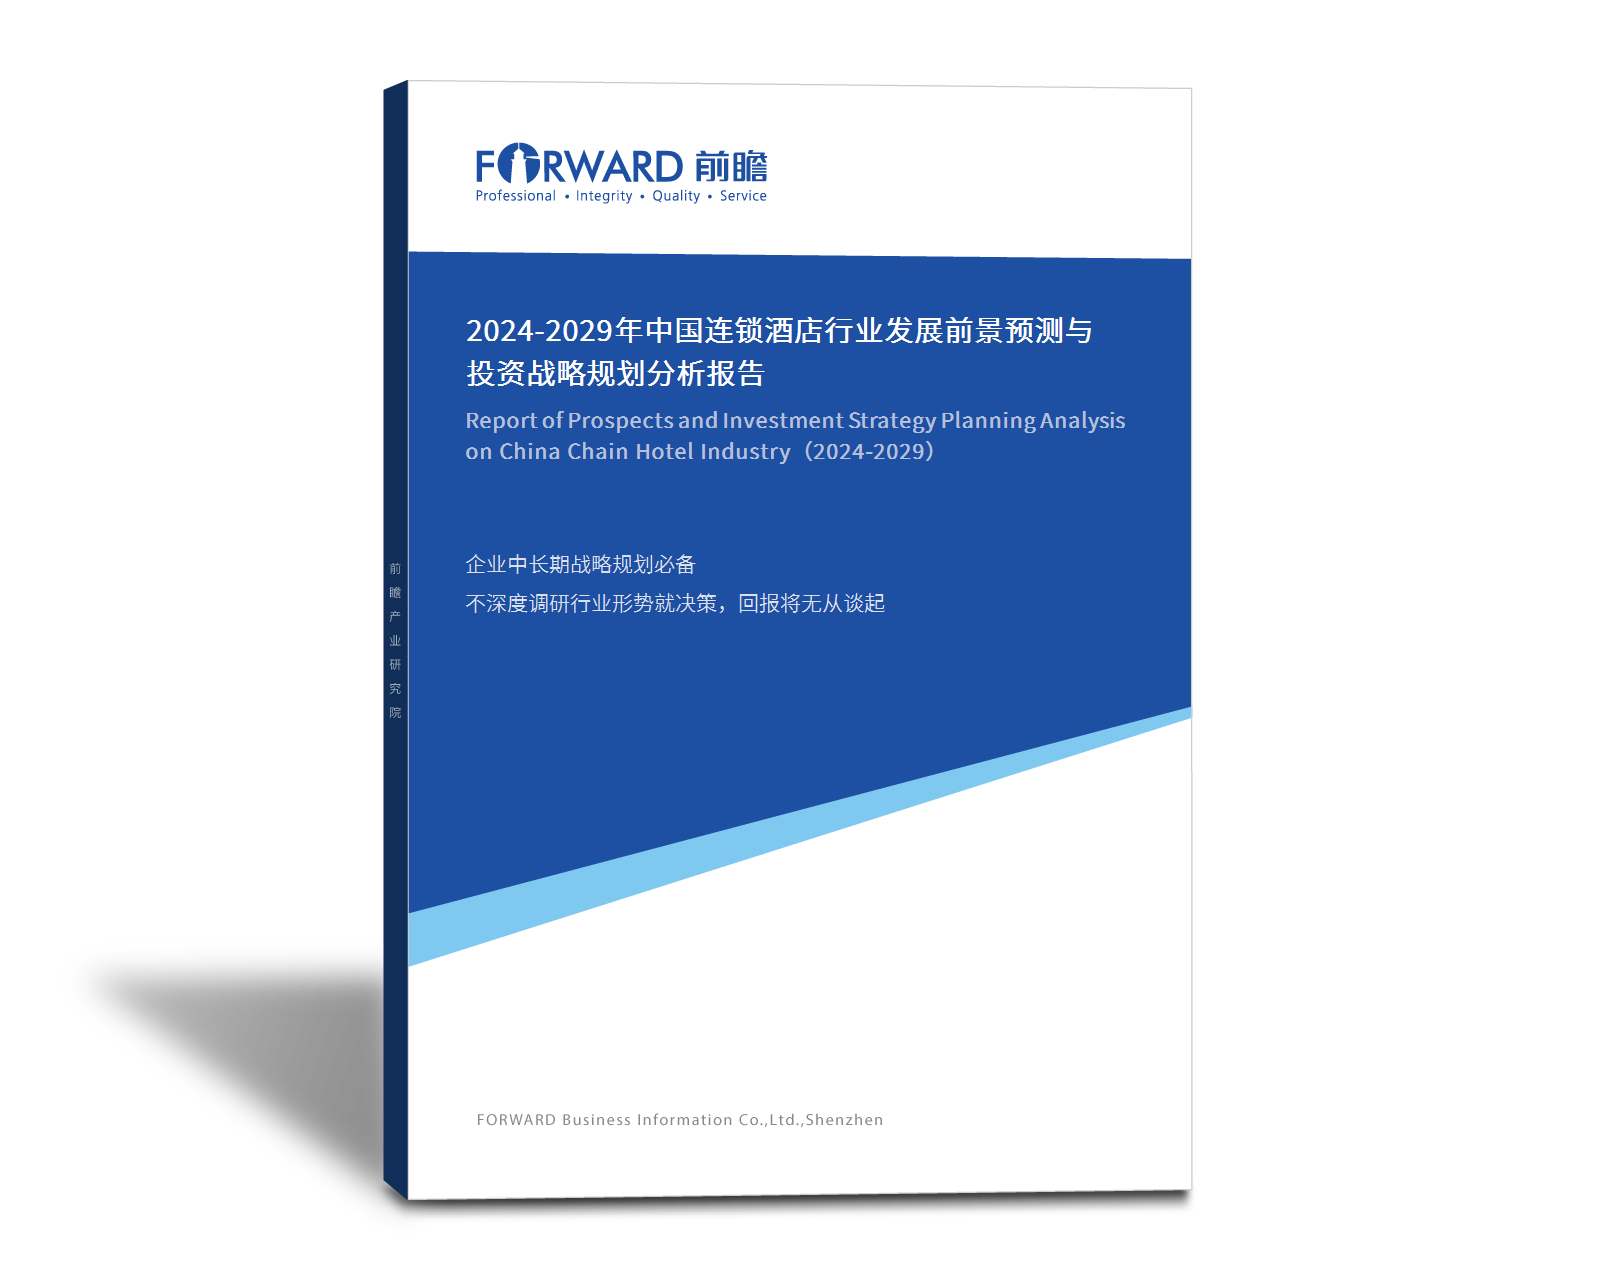 全球及中国半导体ESC行业发展规划及投资动态展望报告2021年版() - AI牛丝